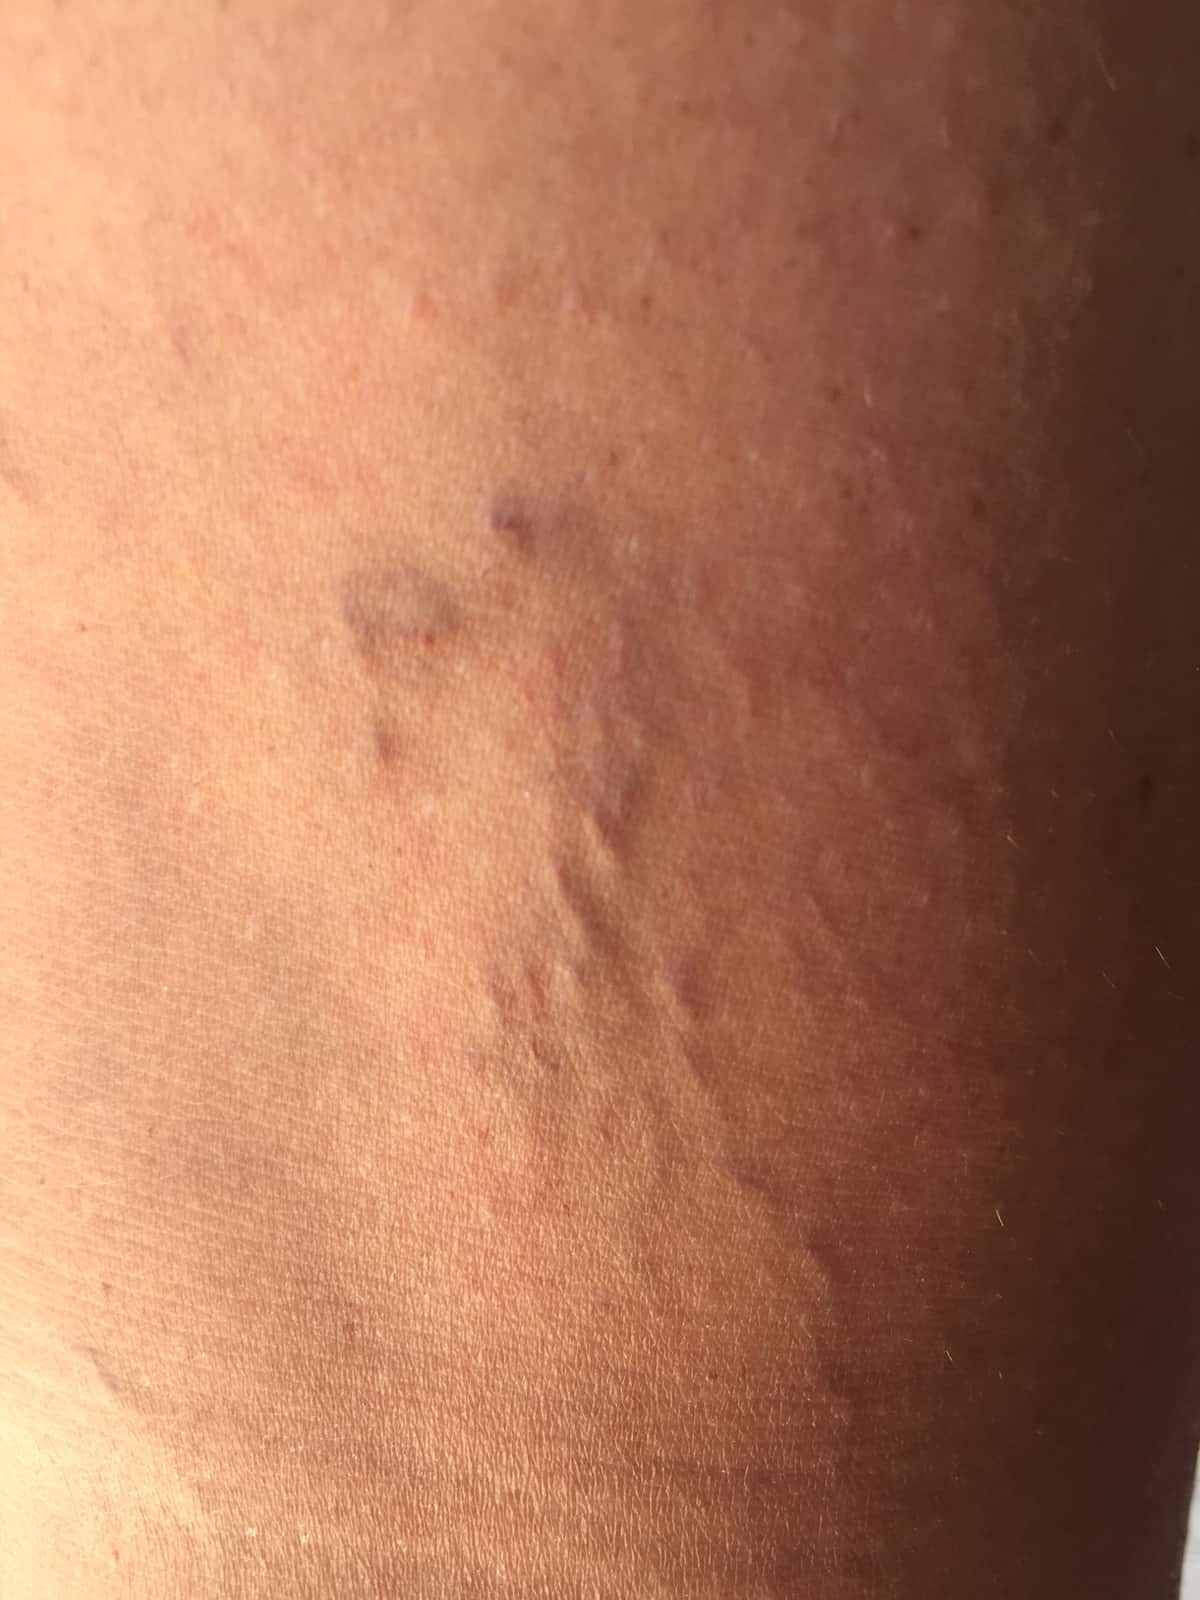 Closeup of veins